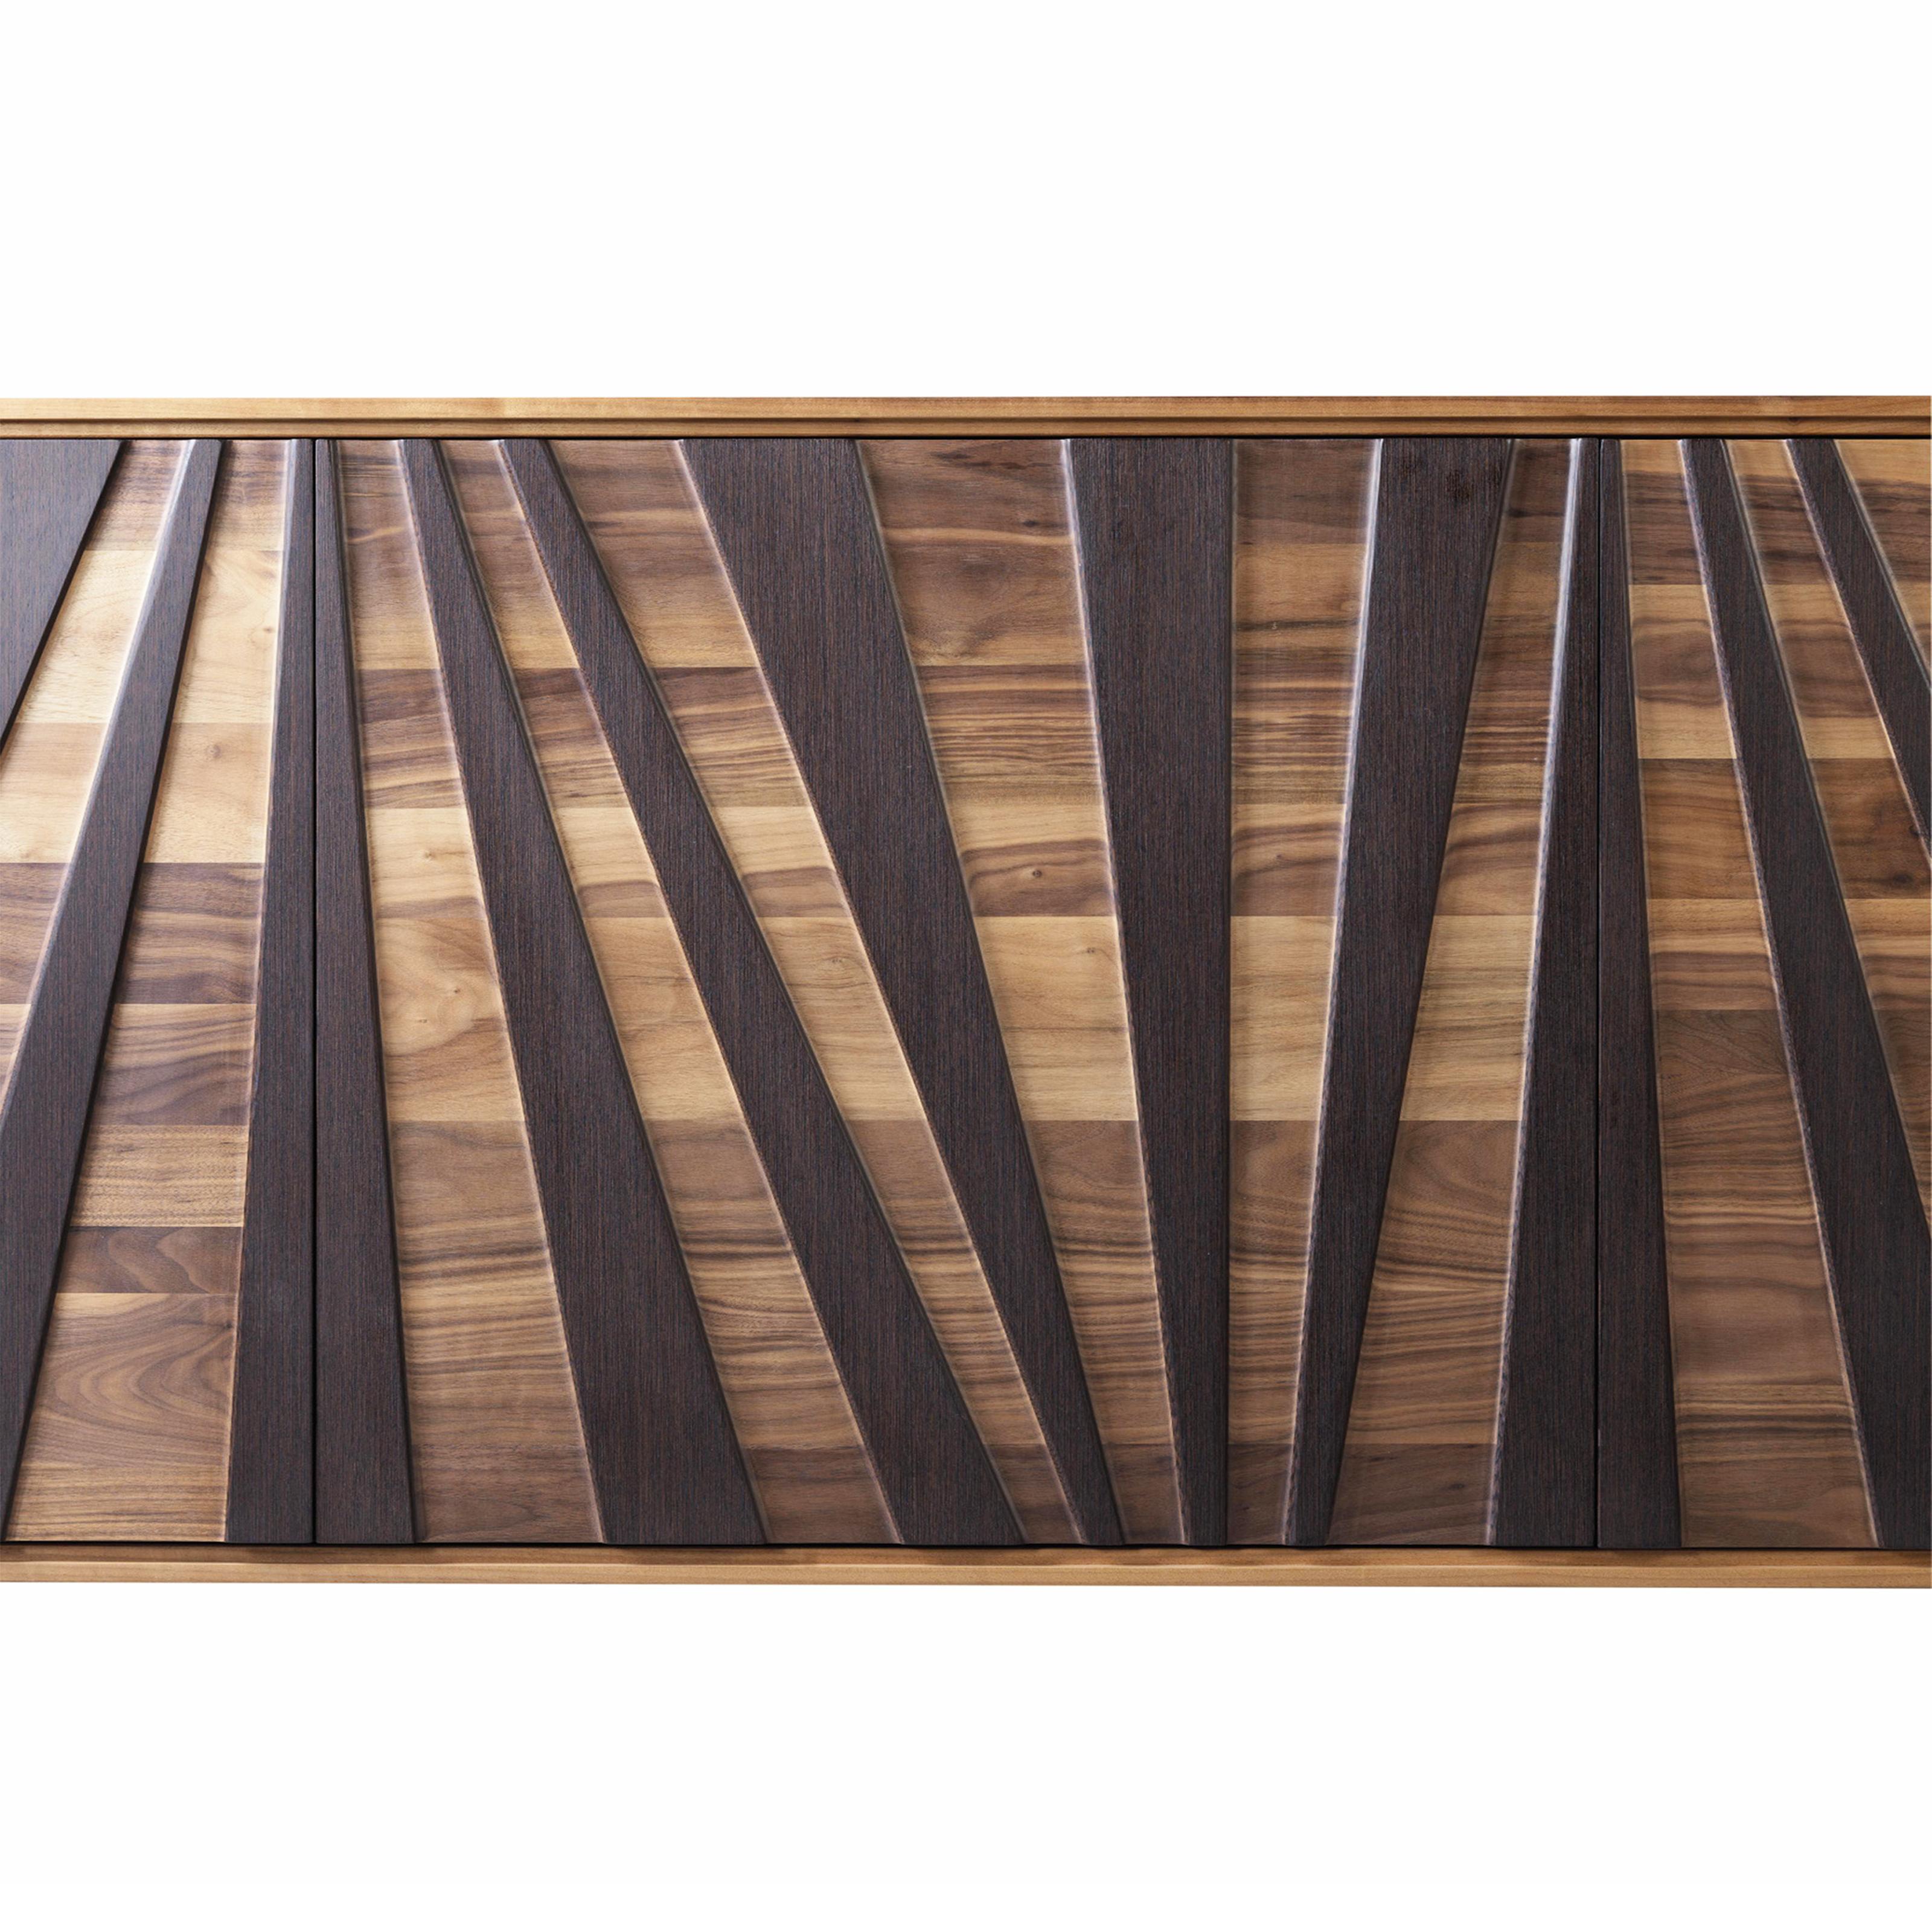 Materia Ventaglio Solid Wood Sideboard, Walnut & Wengè, Contemporary In New Condition For Sale In Cadeglioppi de Oppeano, VR